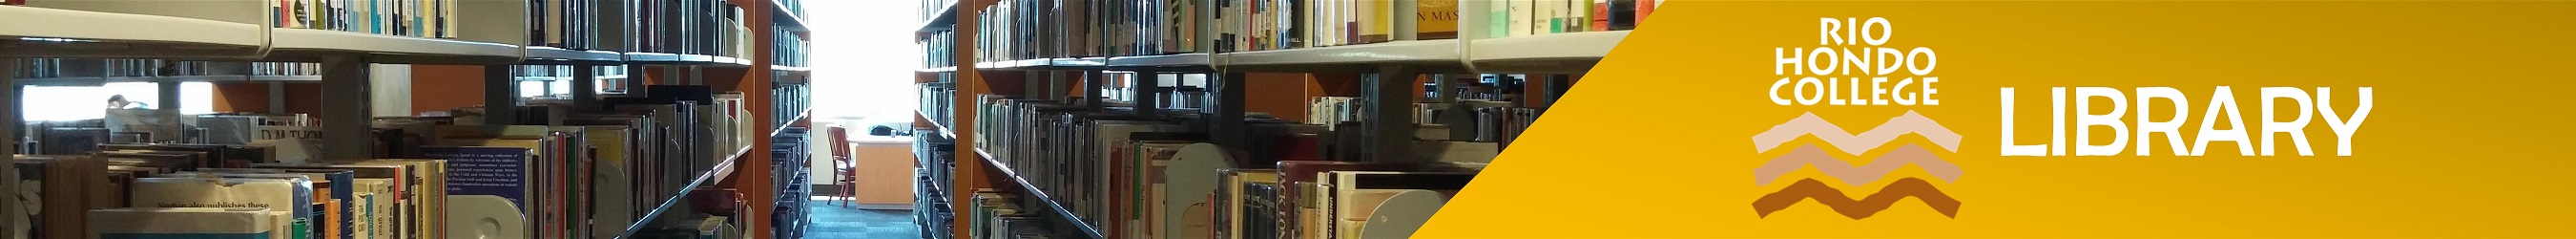 Rio Hondo College Library